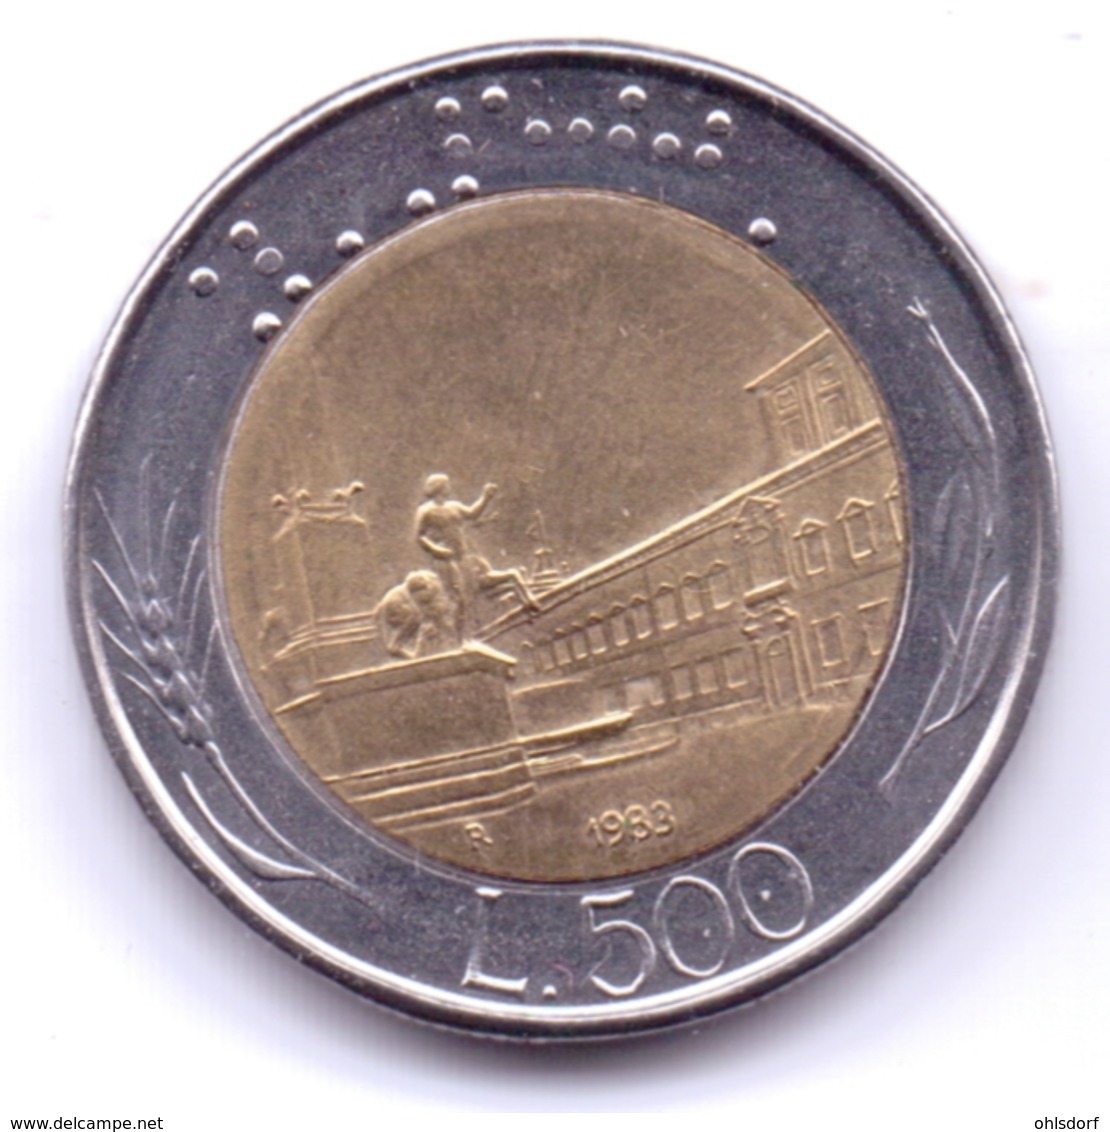 ITALIA 1983: 500 Lire, KM 111 - 500 Lire